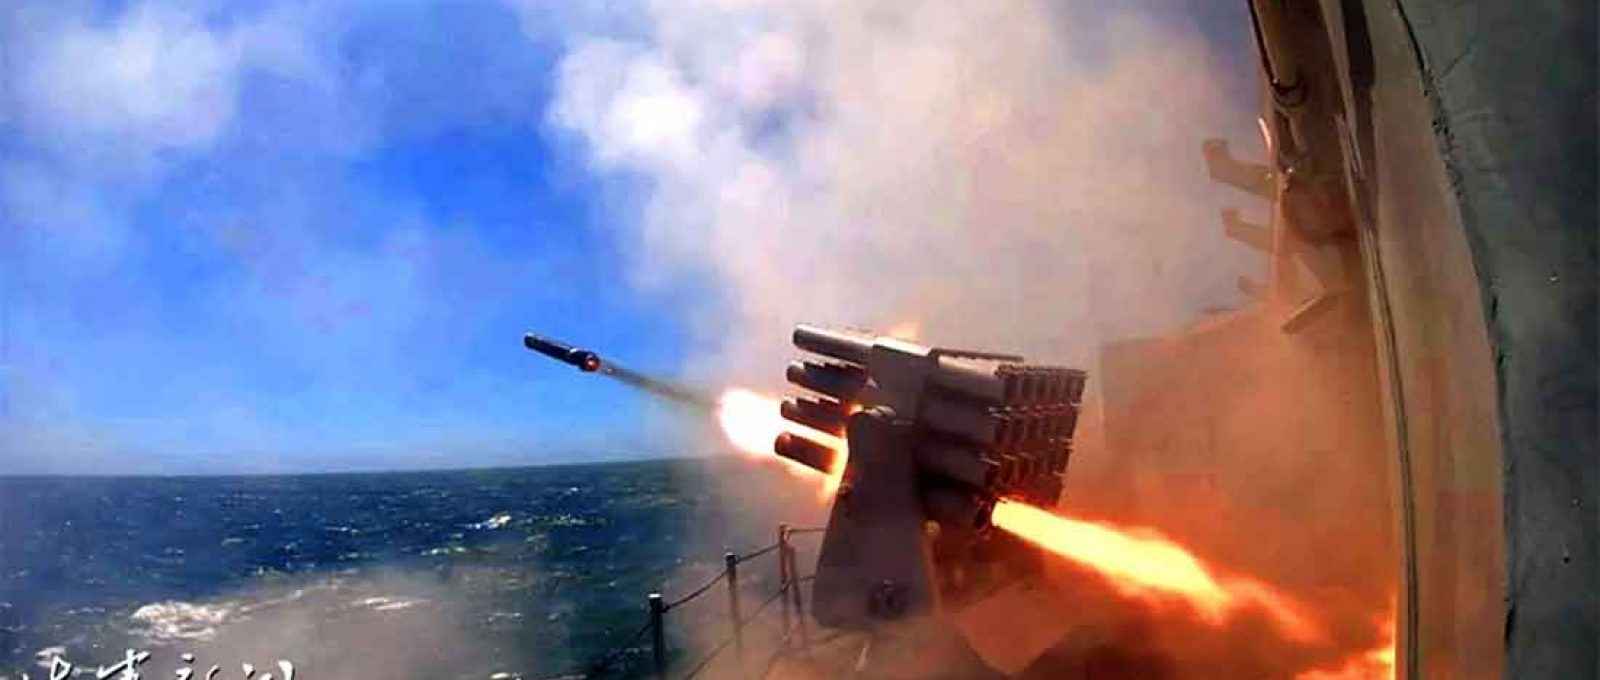 Exercício de fogo real da Marinha chinesa no Mar da China Oriental em agosto de 2020 (Foto: Navy.81.cn).